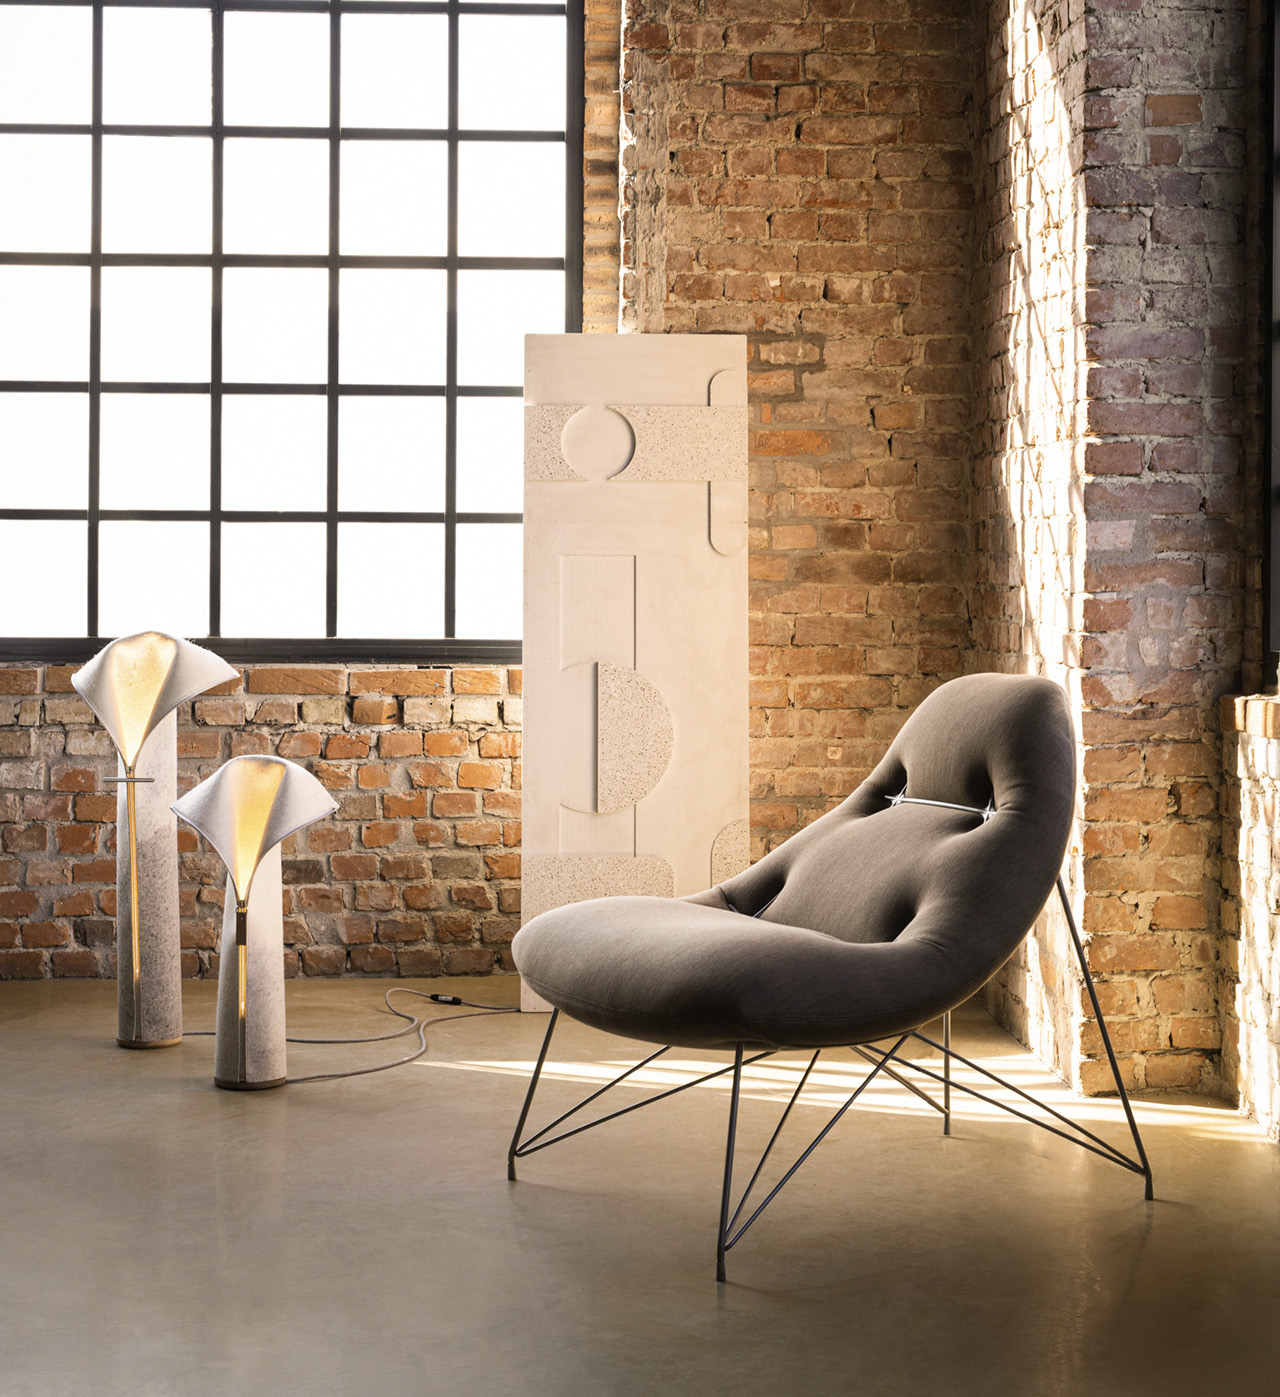 Space saving furniture - Yanko Design